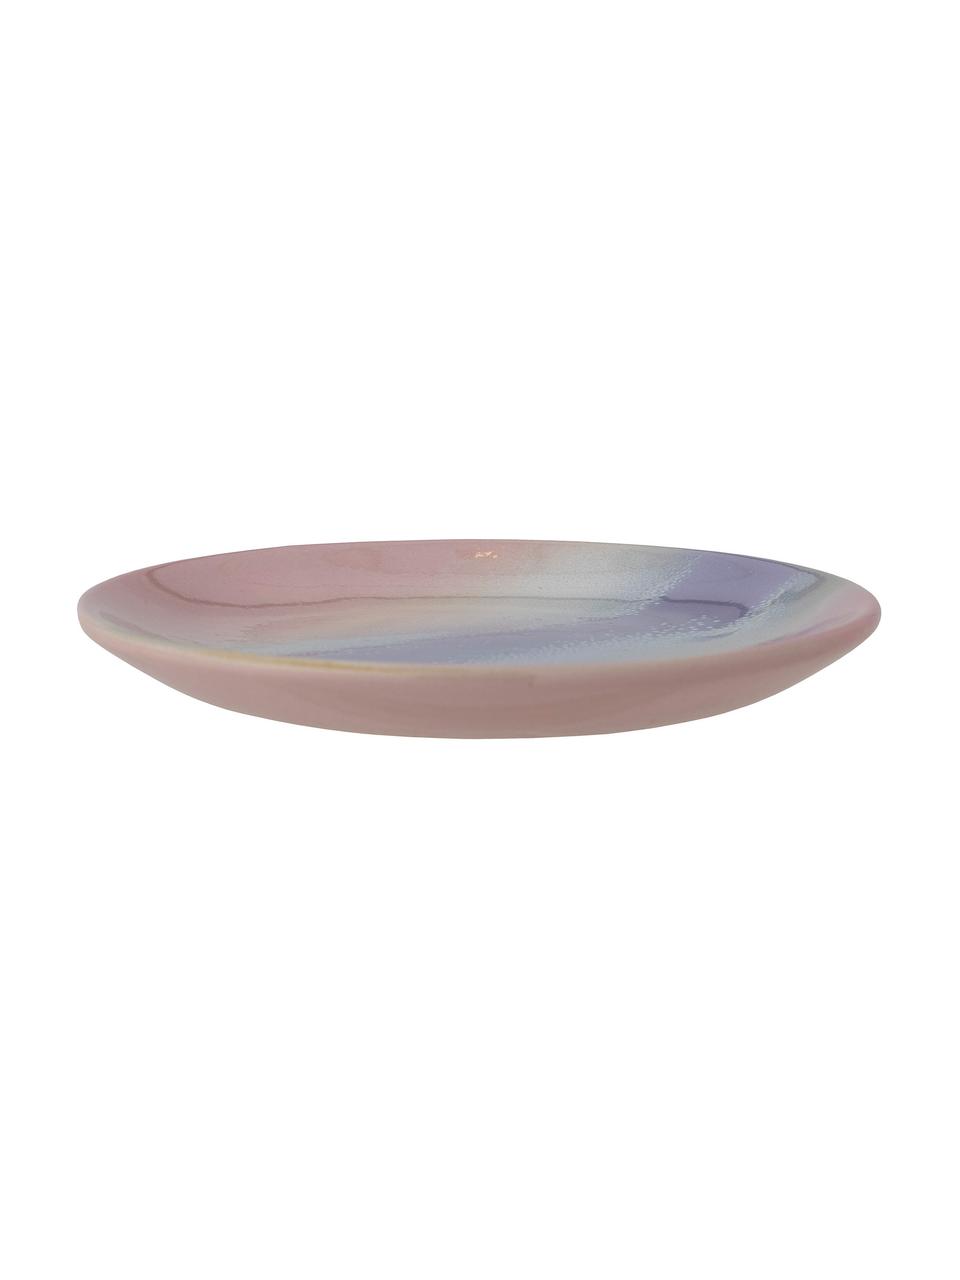 Piatto da colazione fatto a mano con smalto reattivo Safie 4 pz, Gres, Tonalità rosa e viola, Ø 15 cm